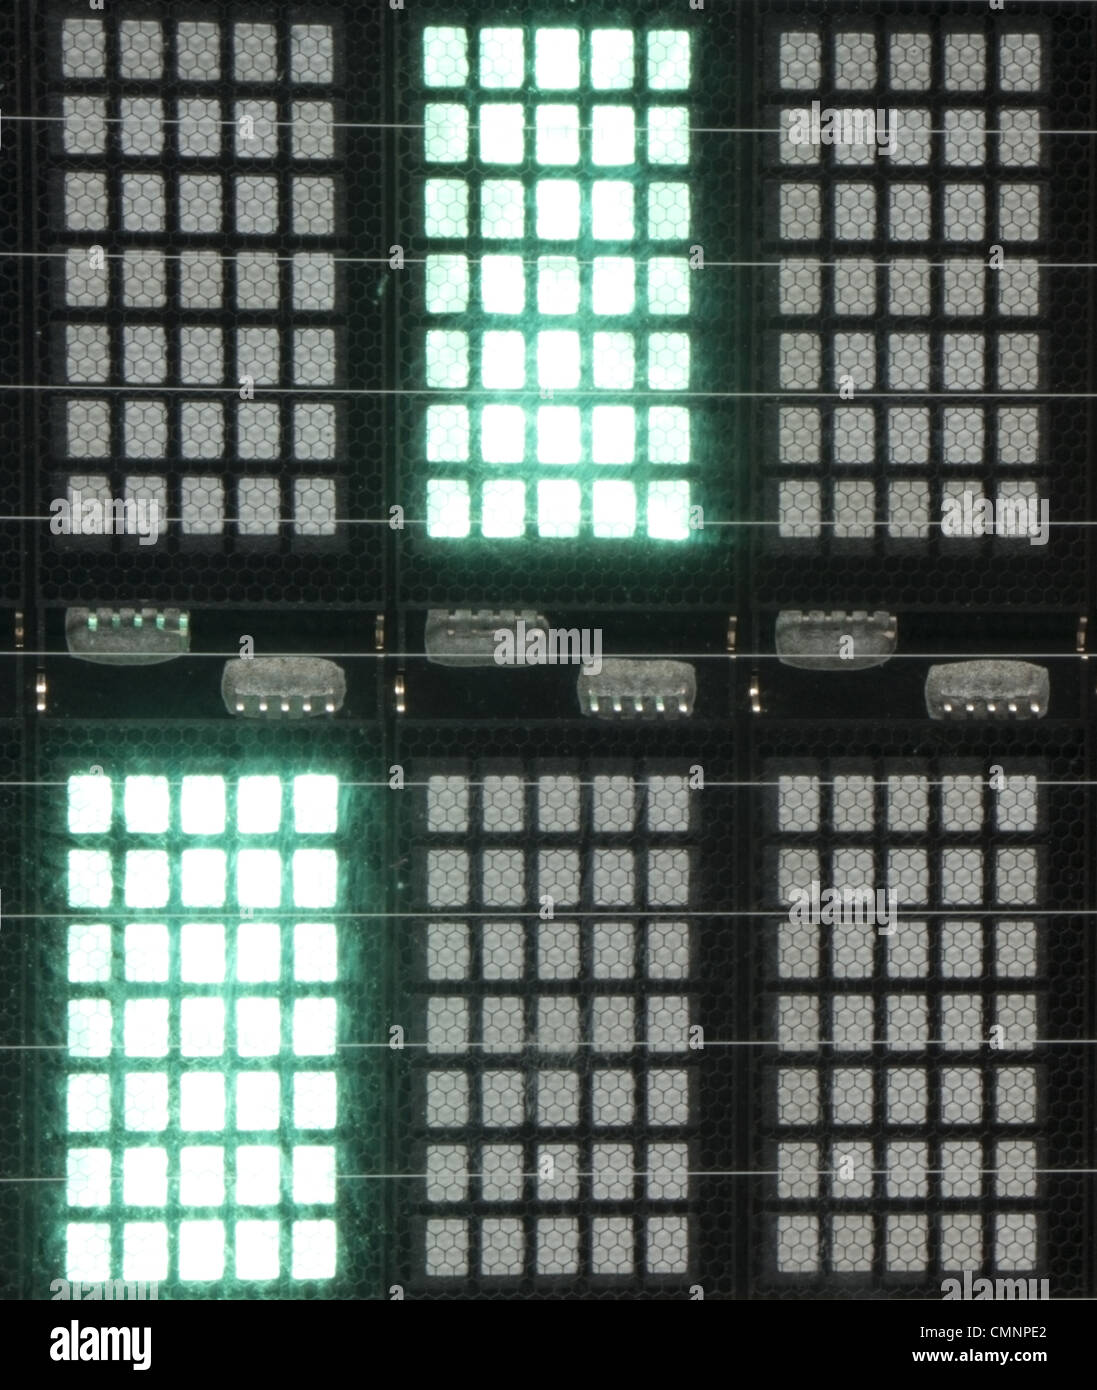 Makroaufnahme von LED-Panel auf elektronische Kassen und Epos-Systeme verwendet, um Preise und Summen anzeigen Stockfoto